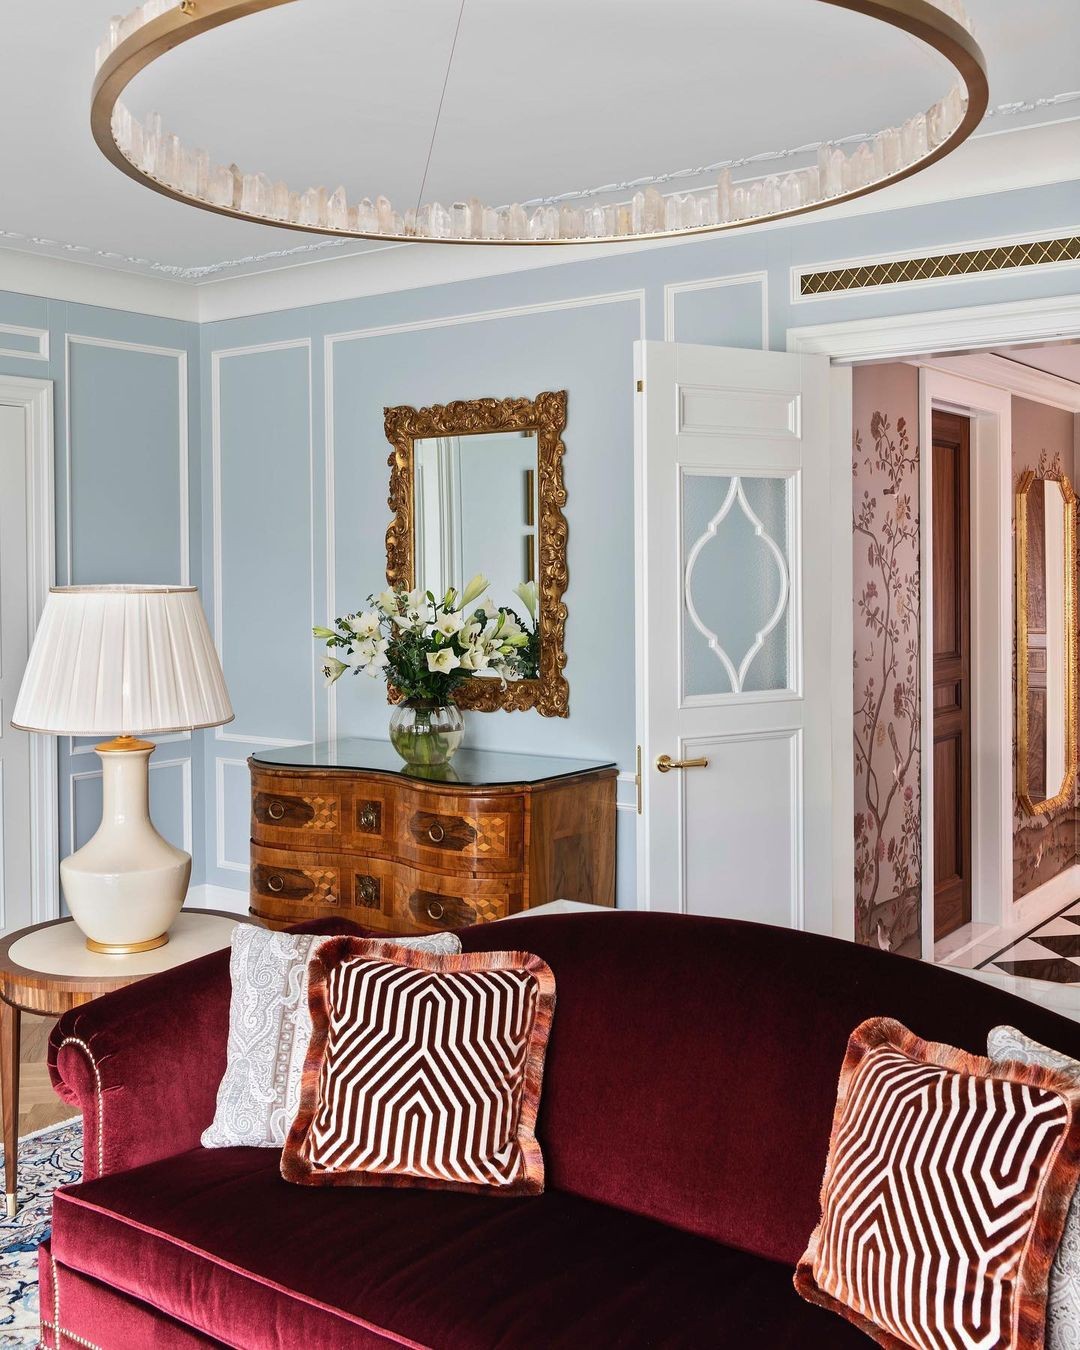 O resort de luxo onde Adriane Galisteu está hospedada (Foto: Reprodução Instagram)